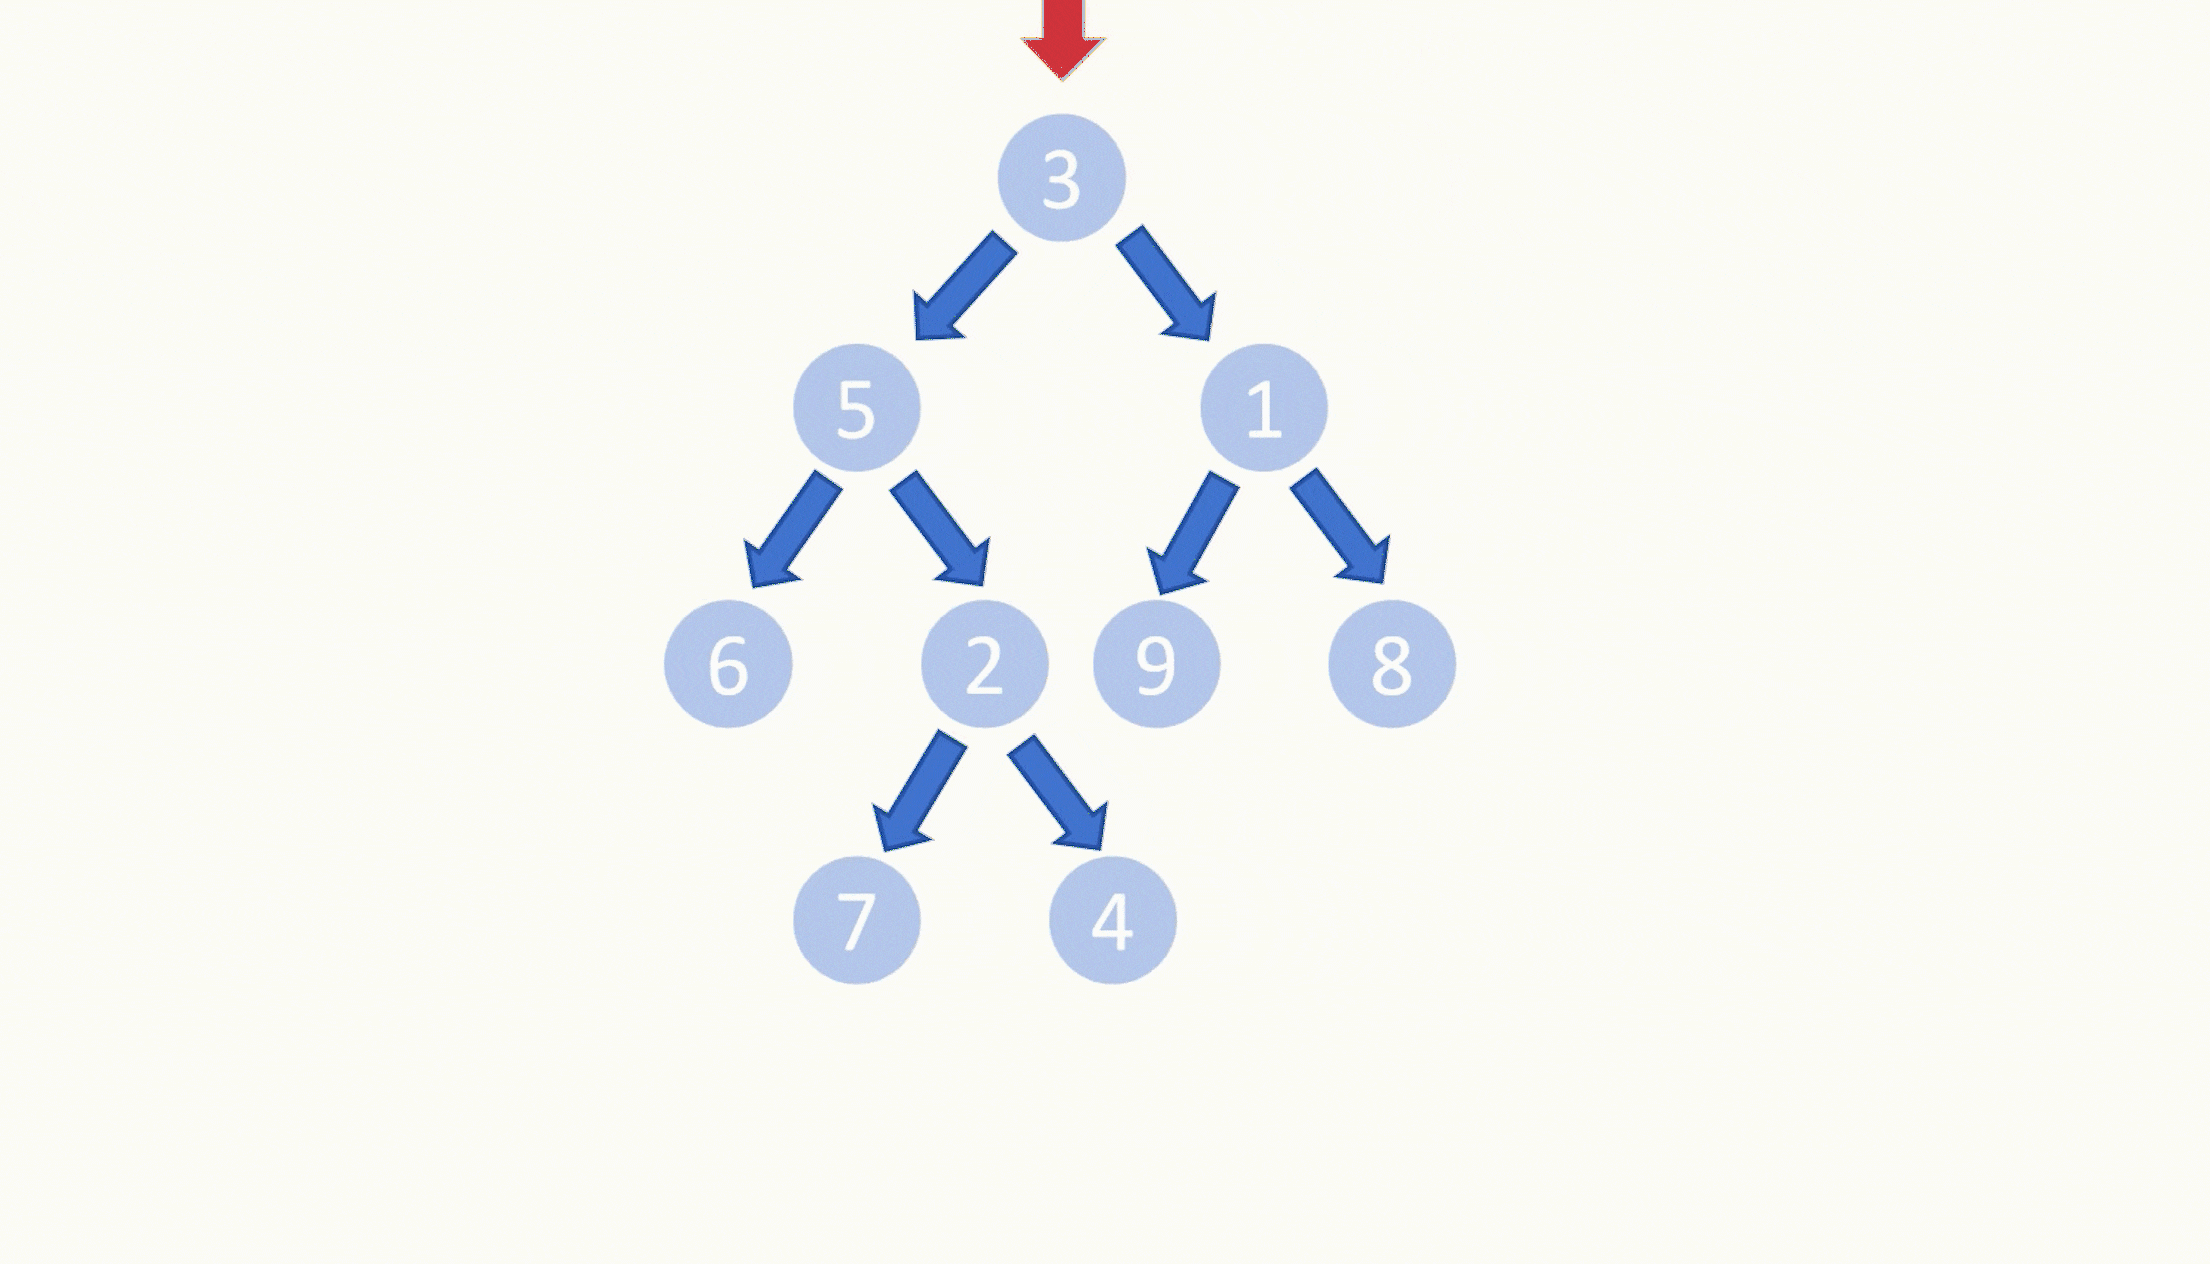 【LeetCode75】第三十四题 叶子相似的树